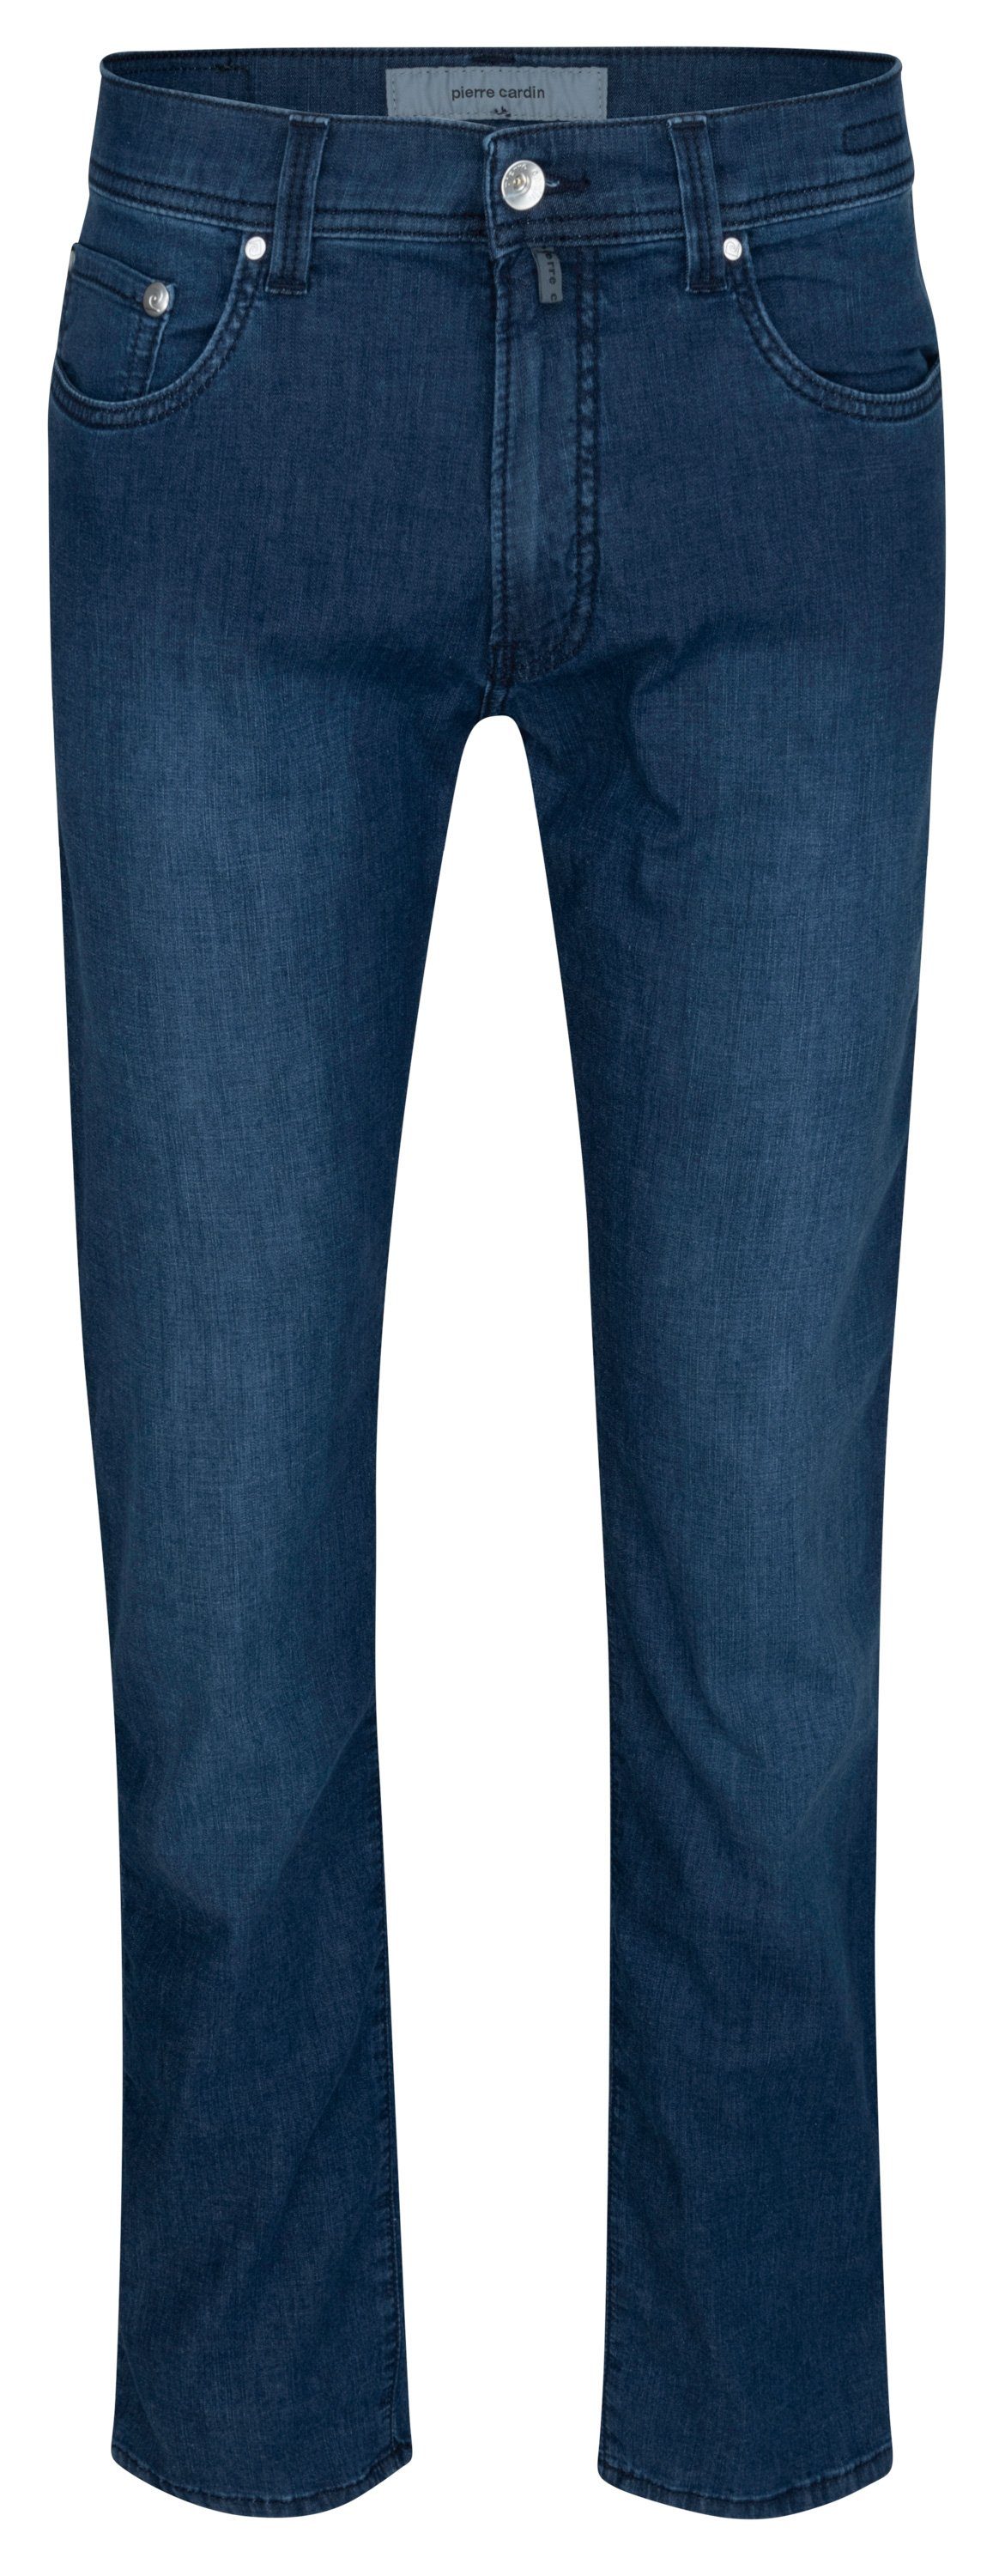 Pierre Cardin 5-Pocket-Jeans PIERRE CARDIN LYON TAPERED dark blue raw 34510 7730.6810 - FUTUREFLEX